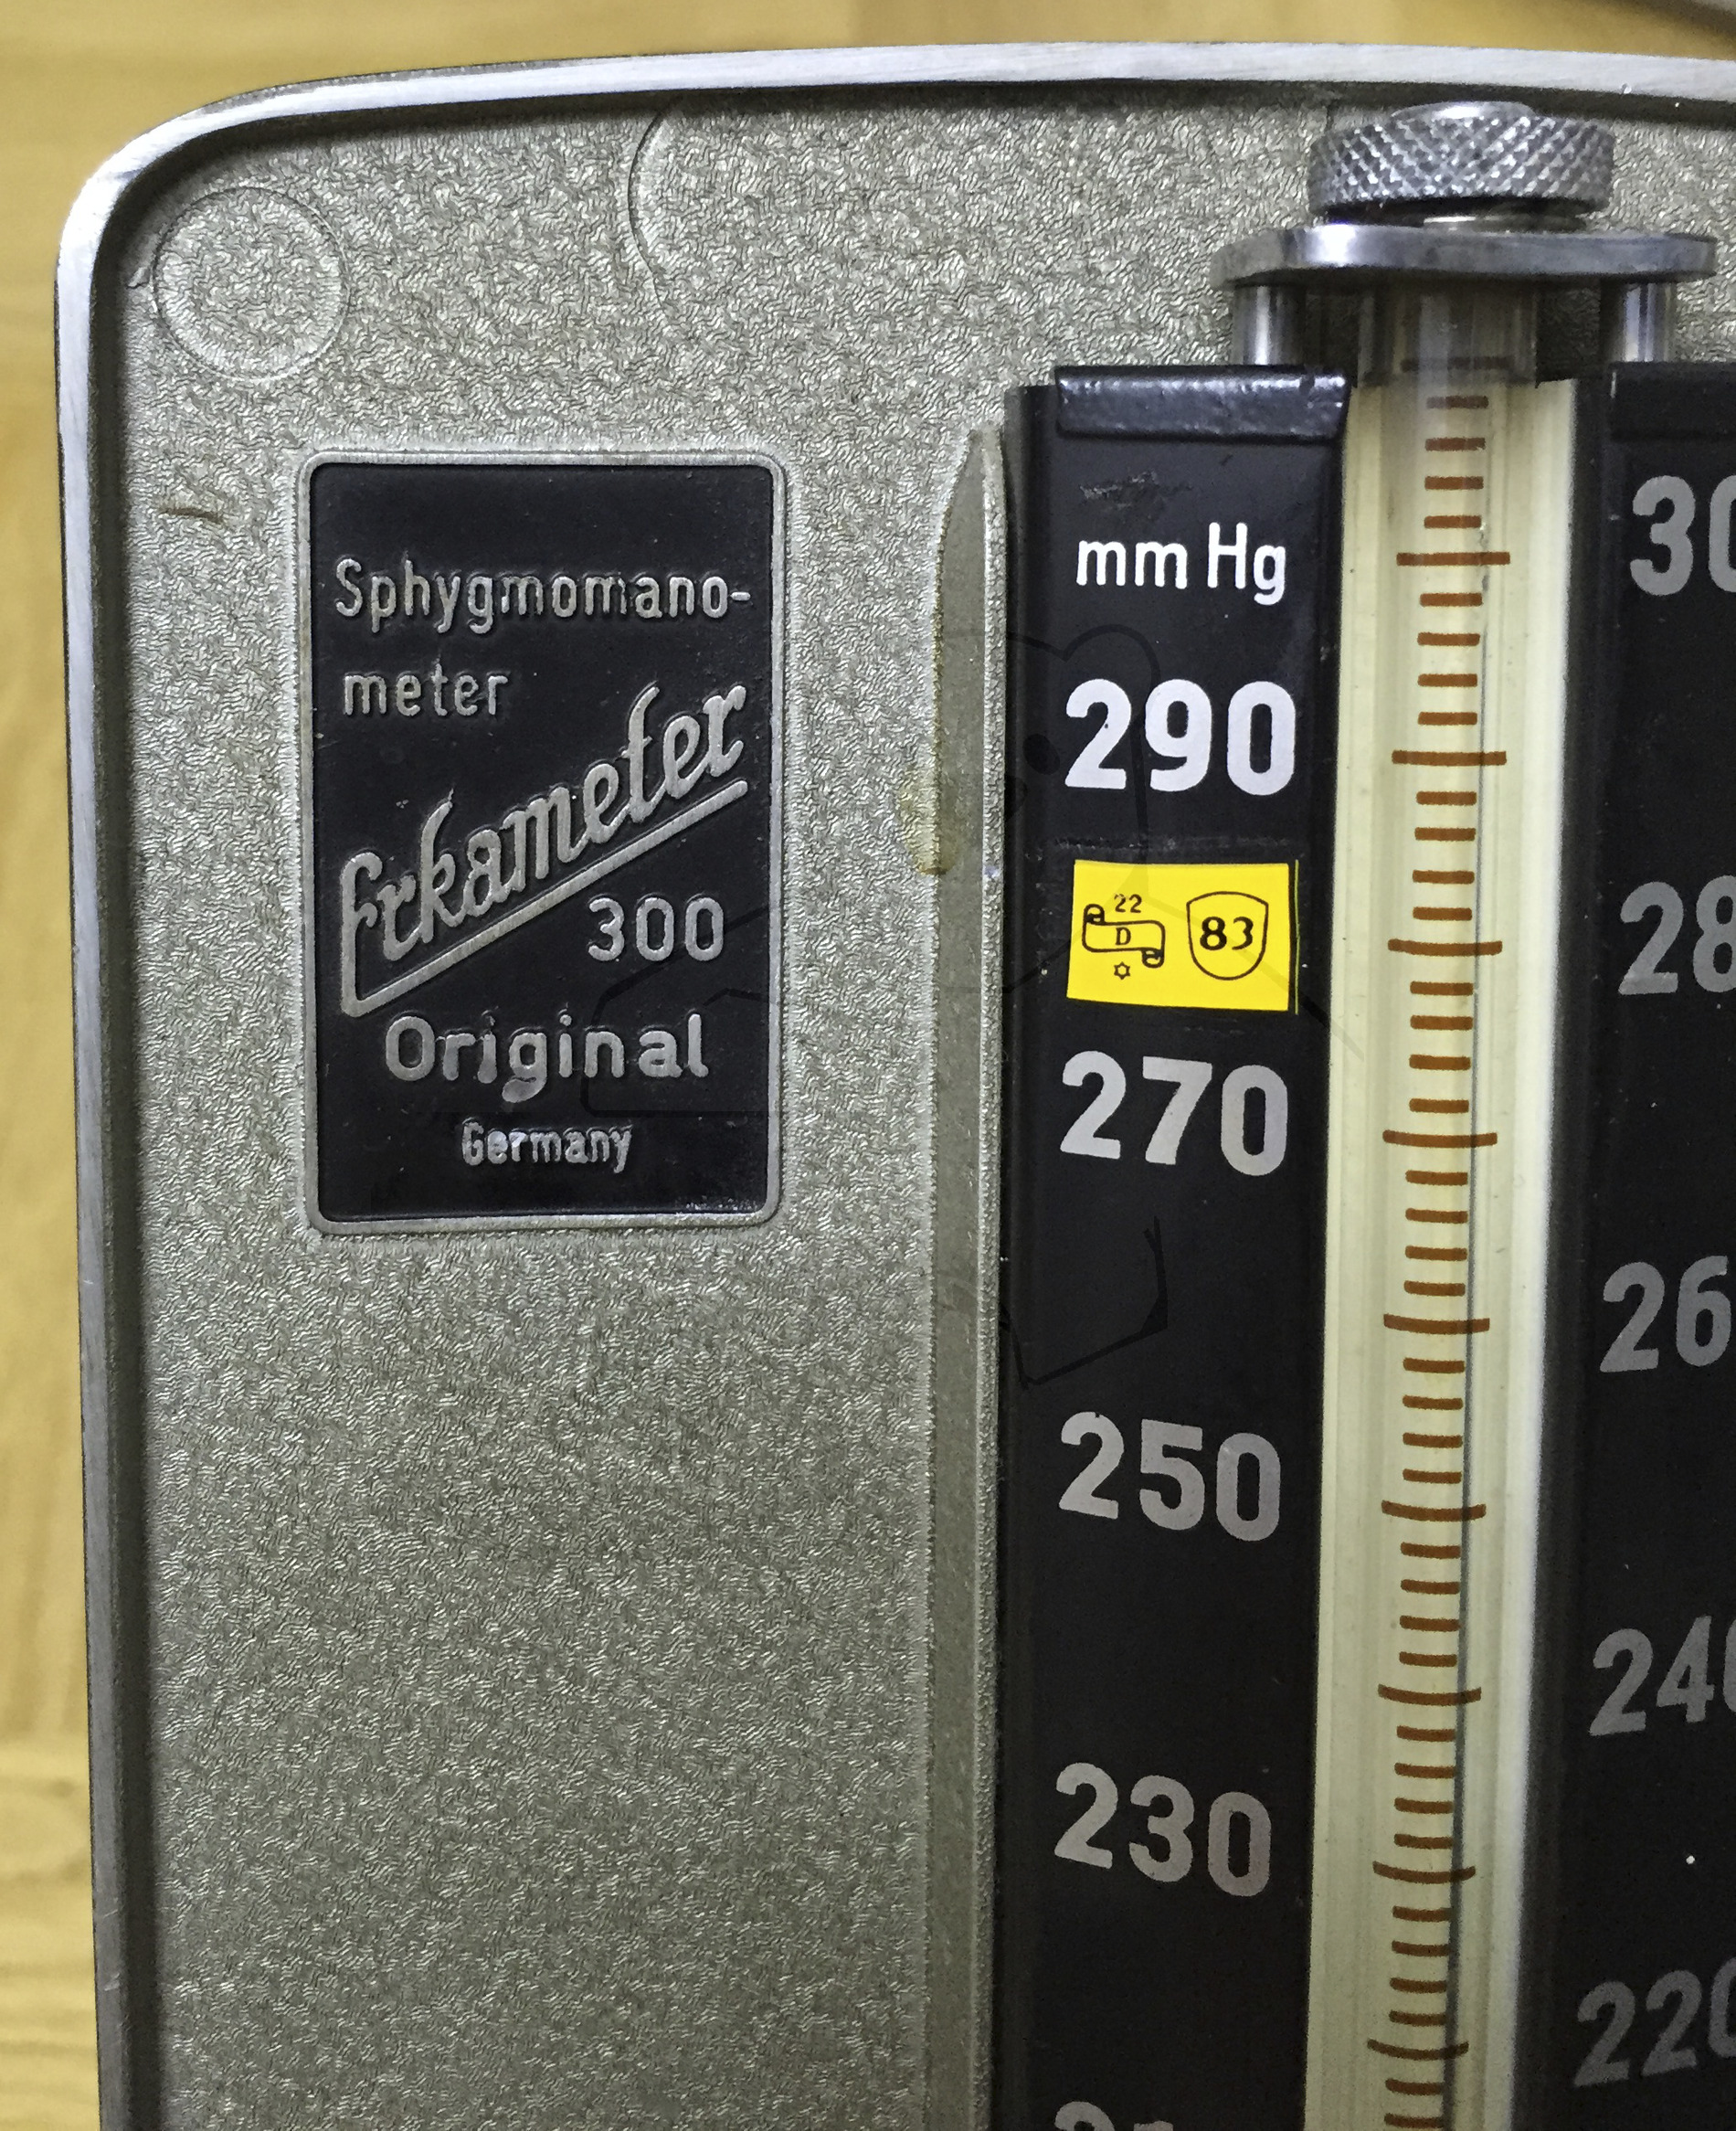 Erka 300 Blutdruckmesser (Sphygmomanometer), Originalzustand, 1960'er Jahre, Typenschild